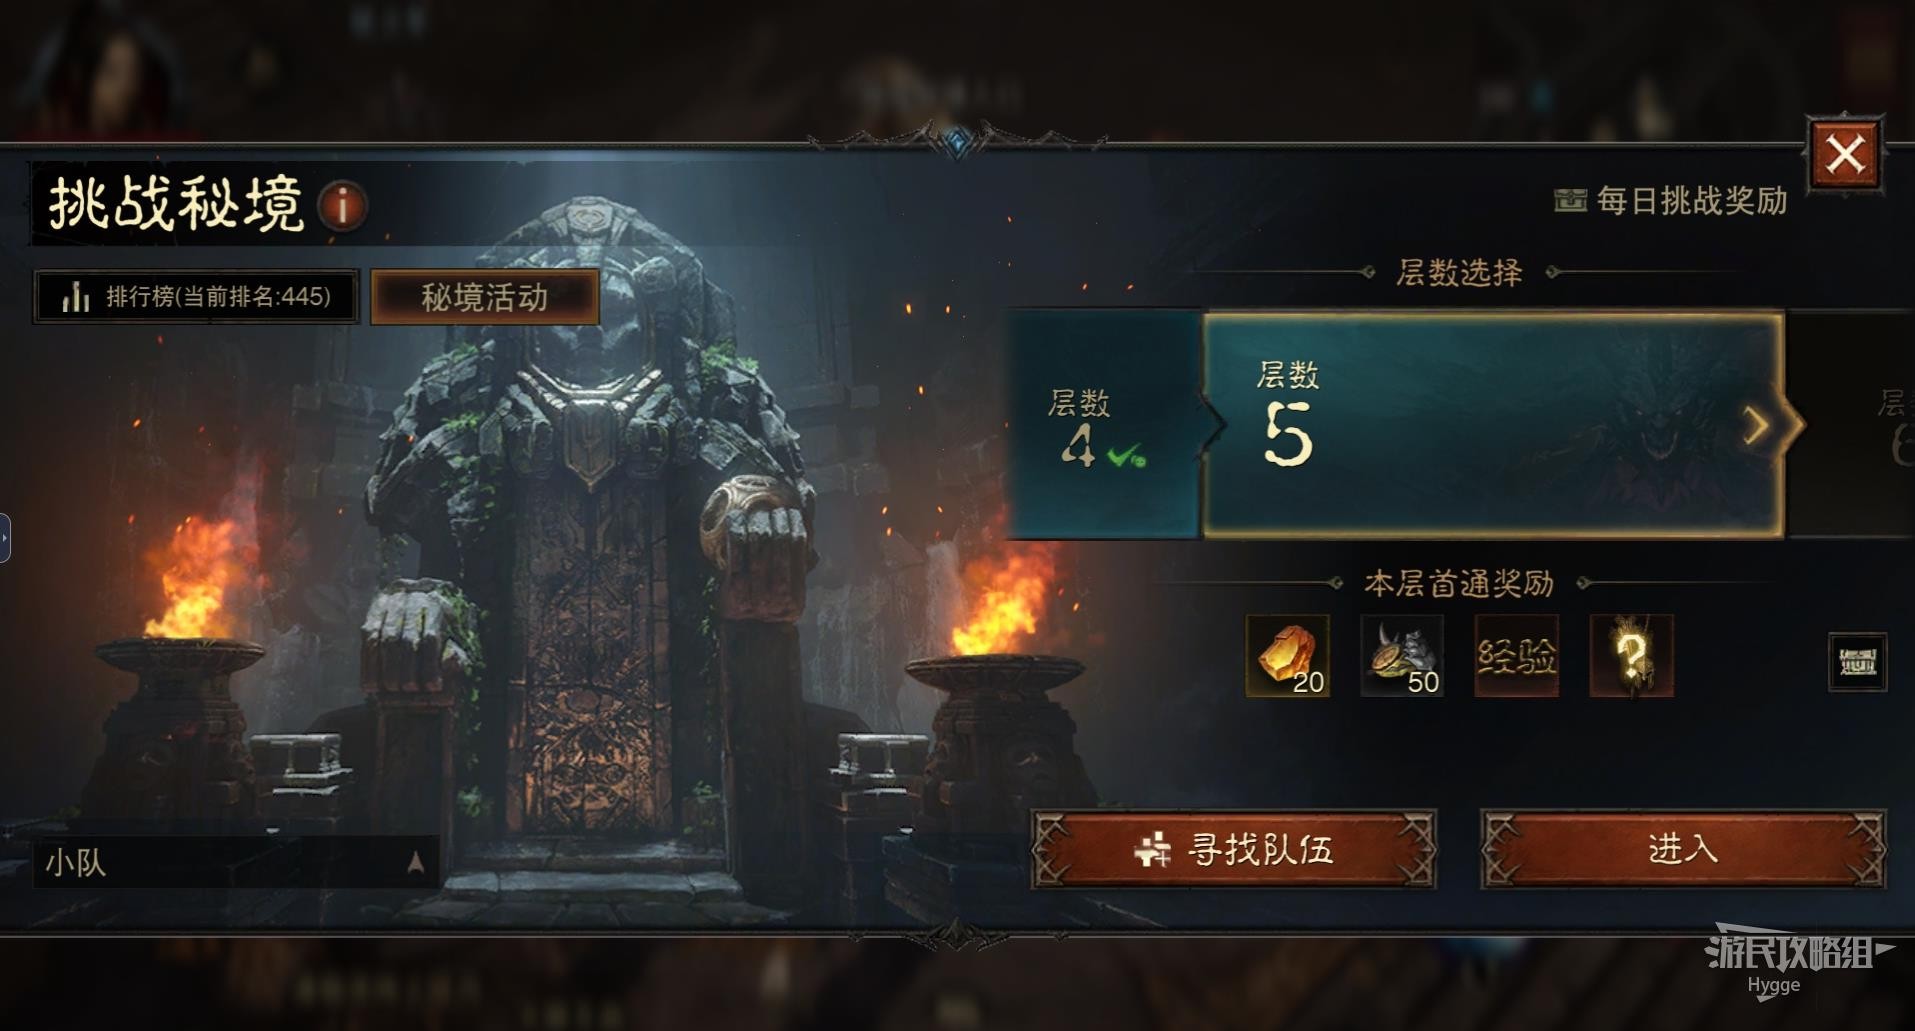 《暗黑破壞神永生不朽》新手入門攻略 遊戲玩法、技能與裝備系統介紹